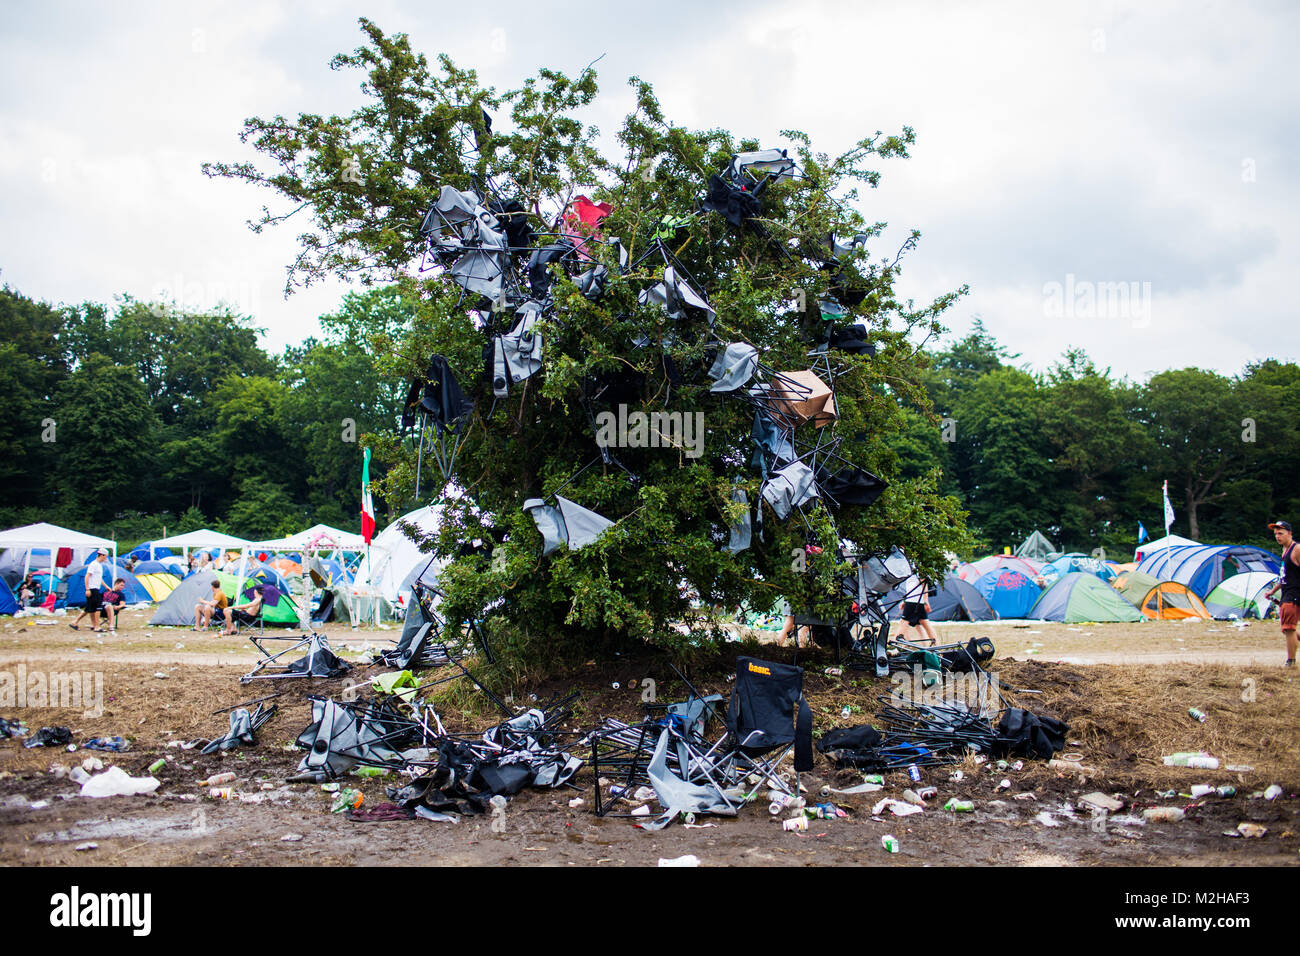 Die Gäste des Festivals haben Sie einen Baum mit Plastikstühlen bombardiert und verwandelte es in einen Stuhl Baum auf dem Campingplatz beim Roskilde Festival. Dänemark 2013. Stockfoto